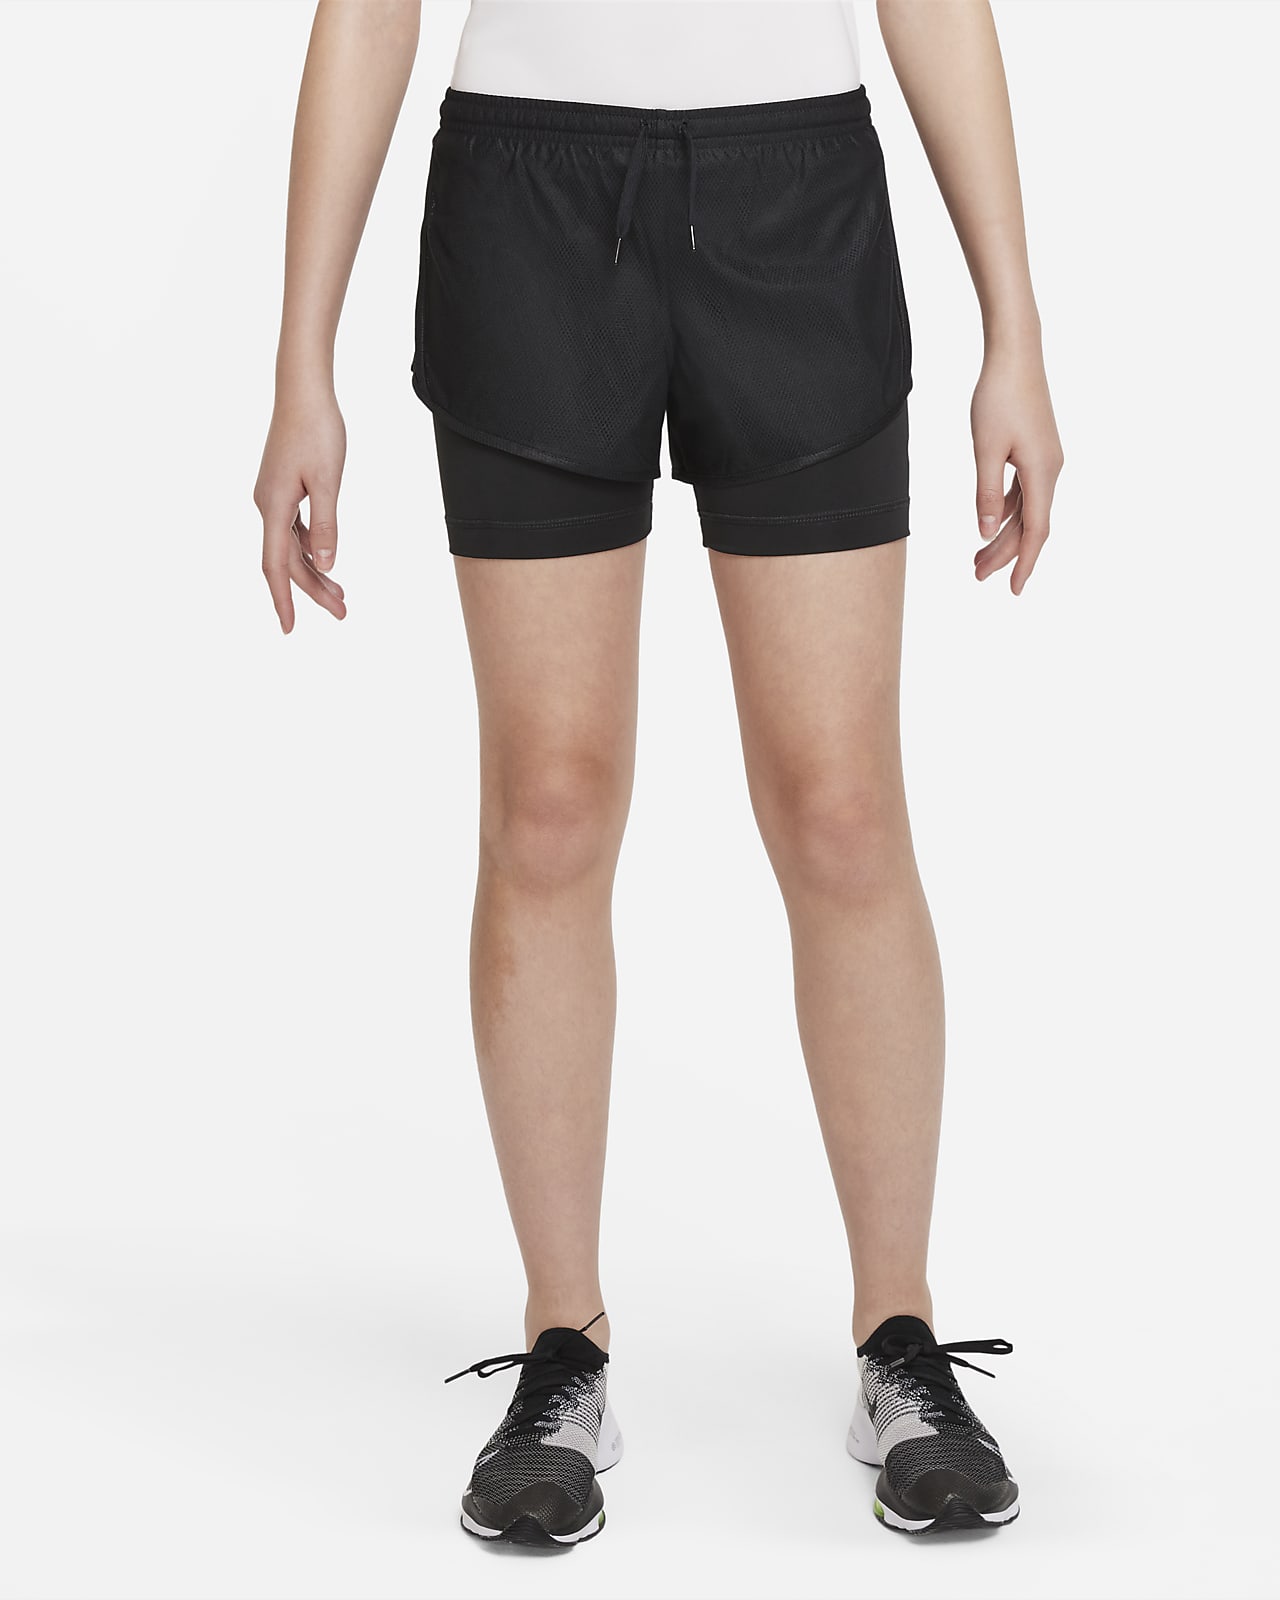 กางเกงเทรนนิ่งขาสั้น 2-in-1 เด็กโต Nike Dri-FIT Tempo (หญิง)